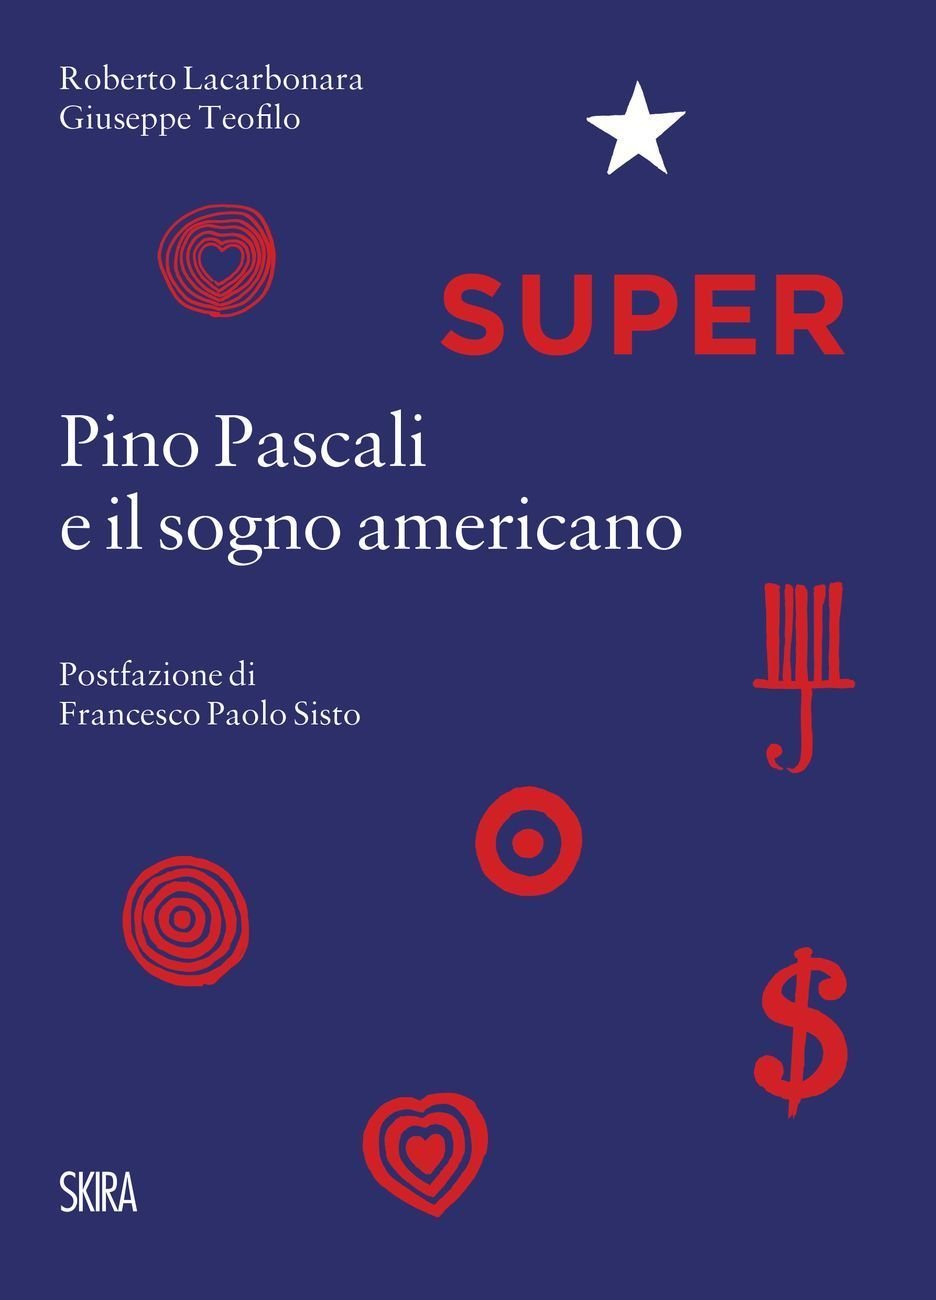 Roberto Lacarbonara & Giuseppe Teofilo – Super. Pino Pascali e il sogno americano (Skira, Milano 2017)